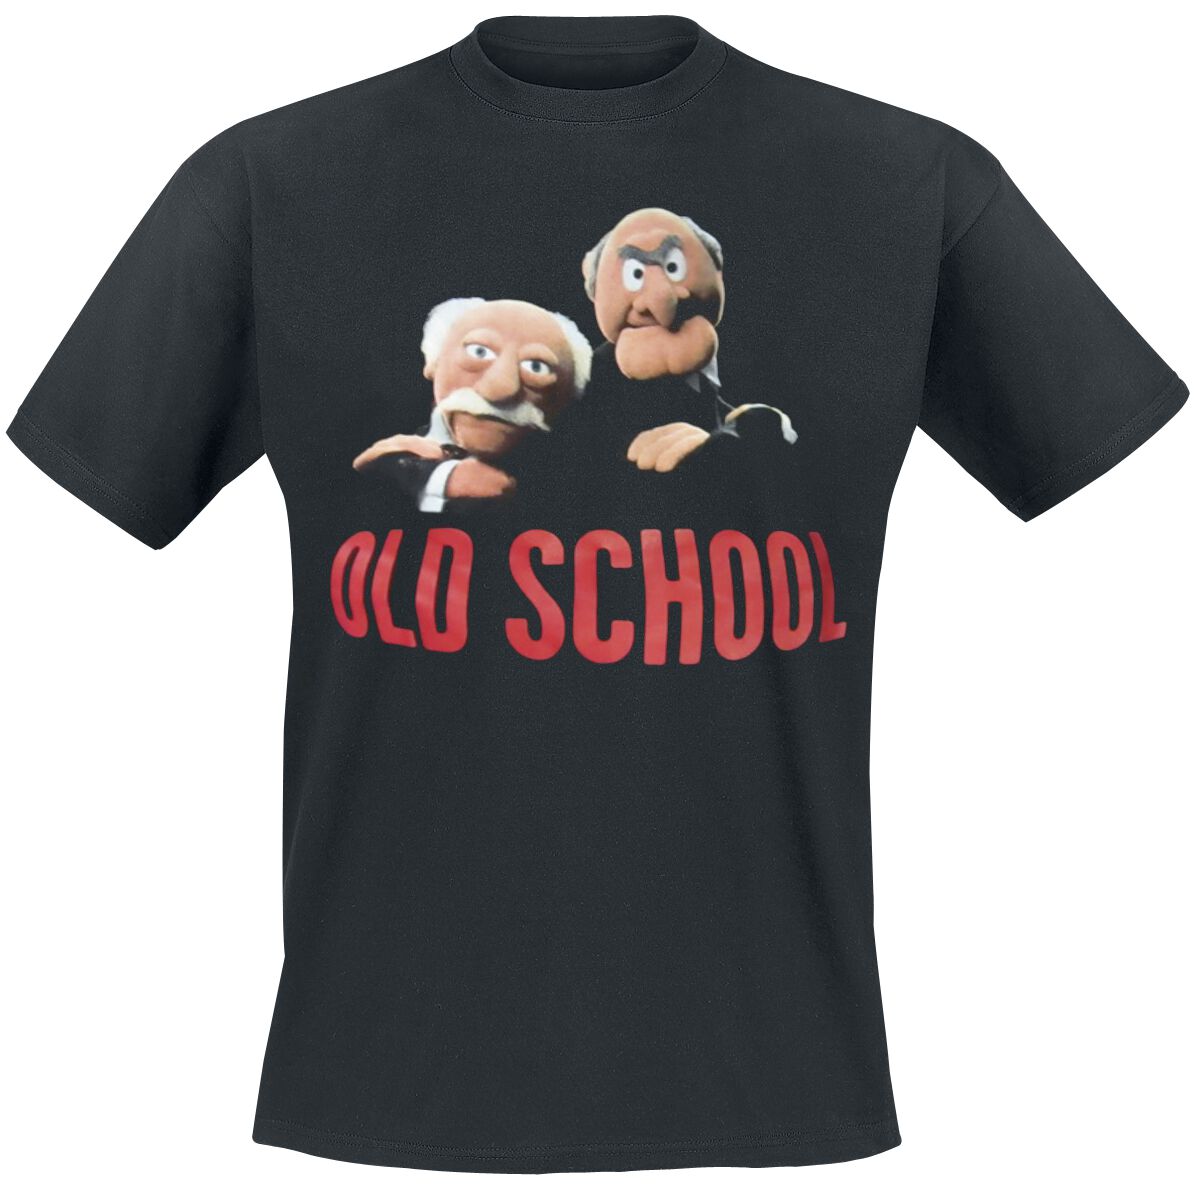 Die Muppets T-Shirt - Old School - M bis 5XL - für Männer - Größe 4XL - schwarz  - Lizenzierter Fanartikel